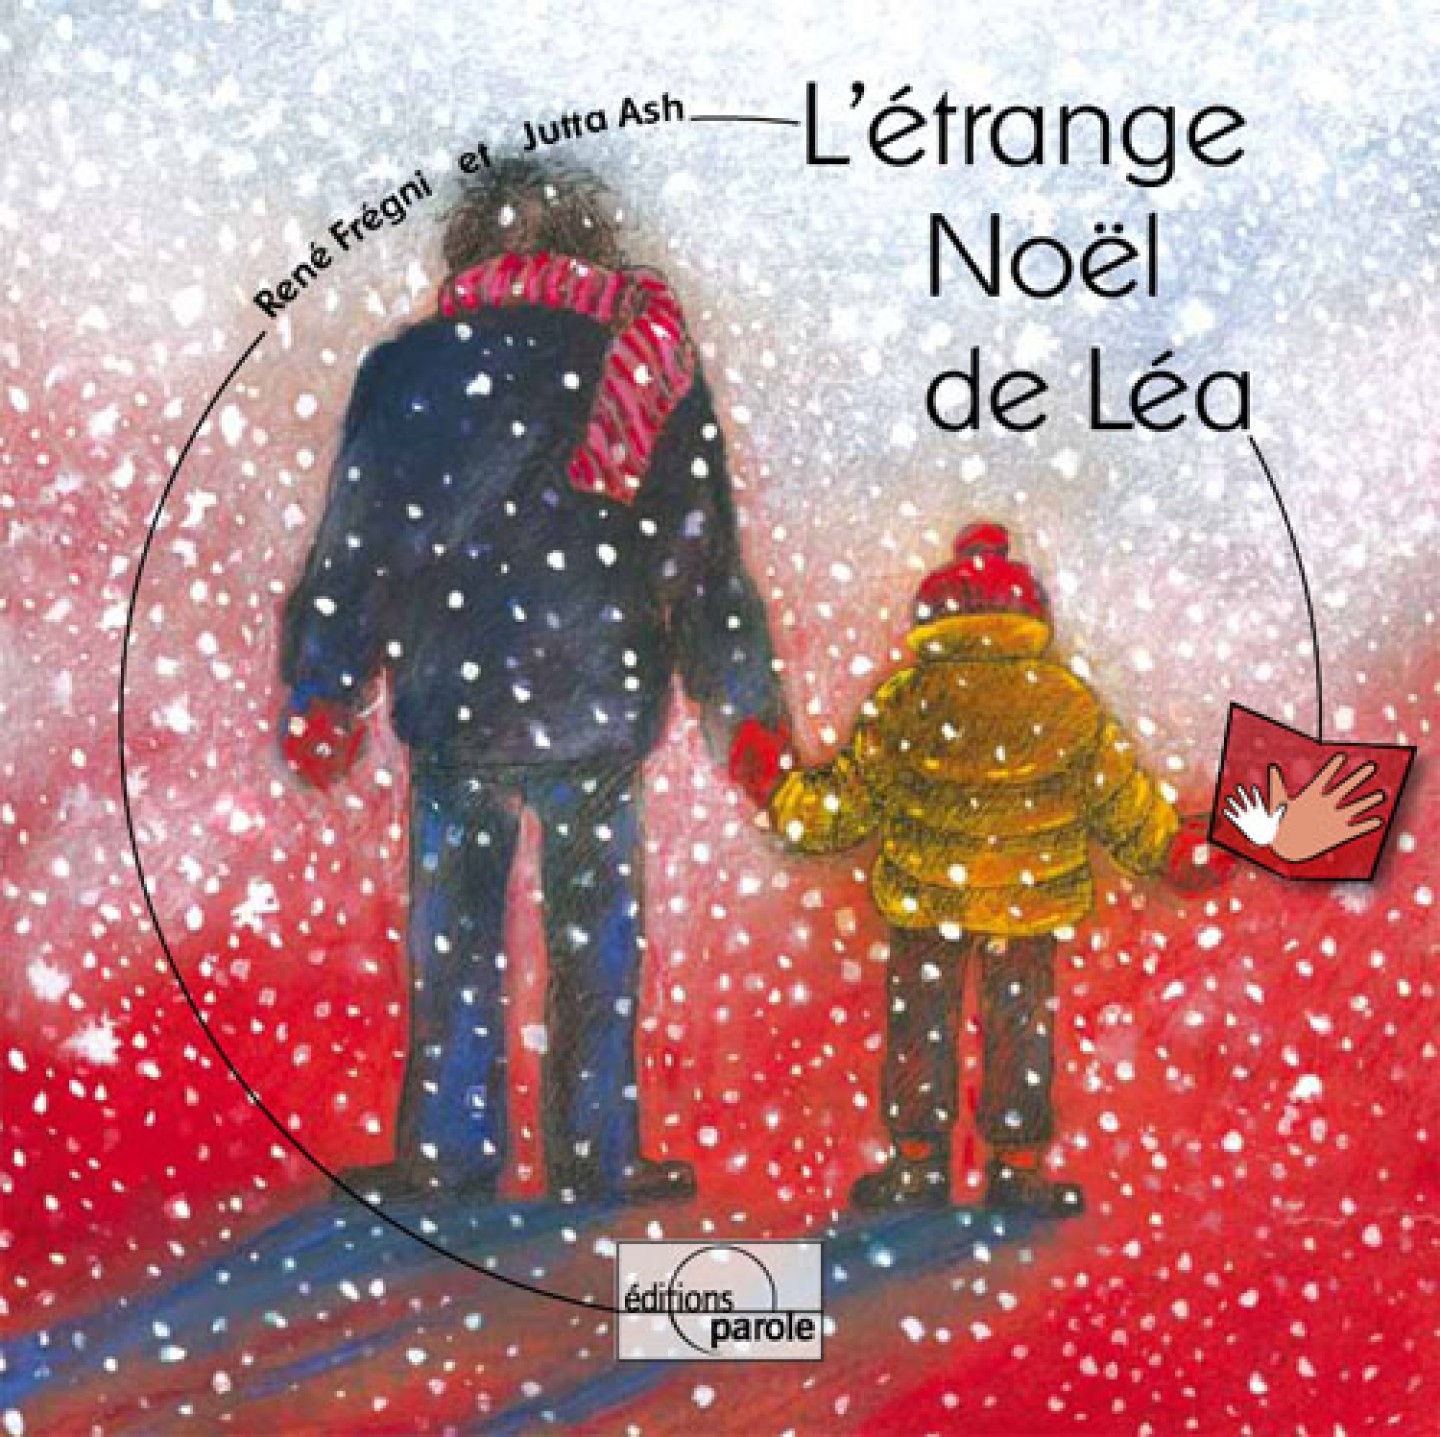 L’étrange Noël de Léa - René Frégni et Jutta Ash